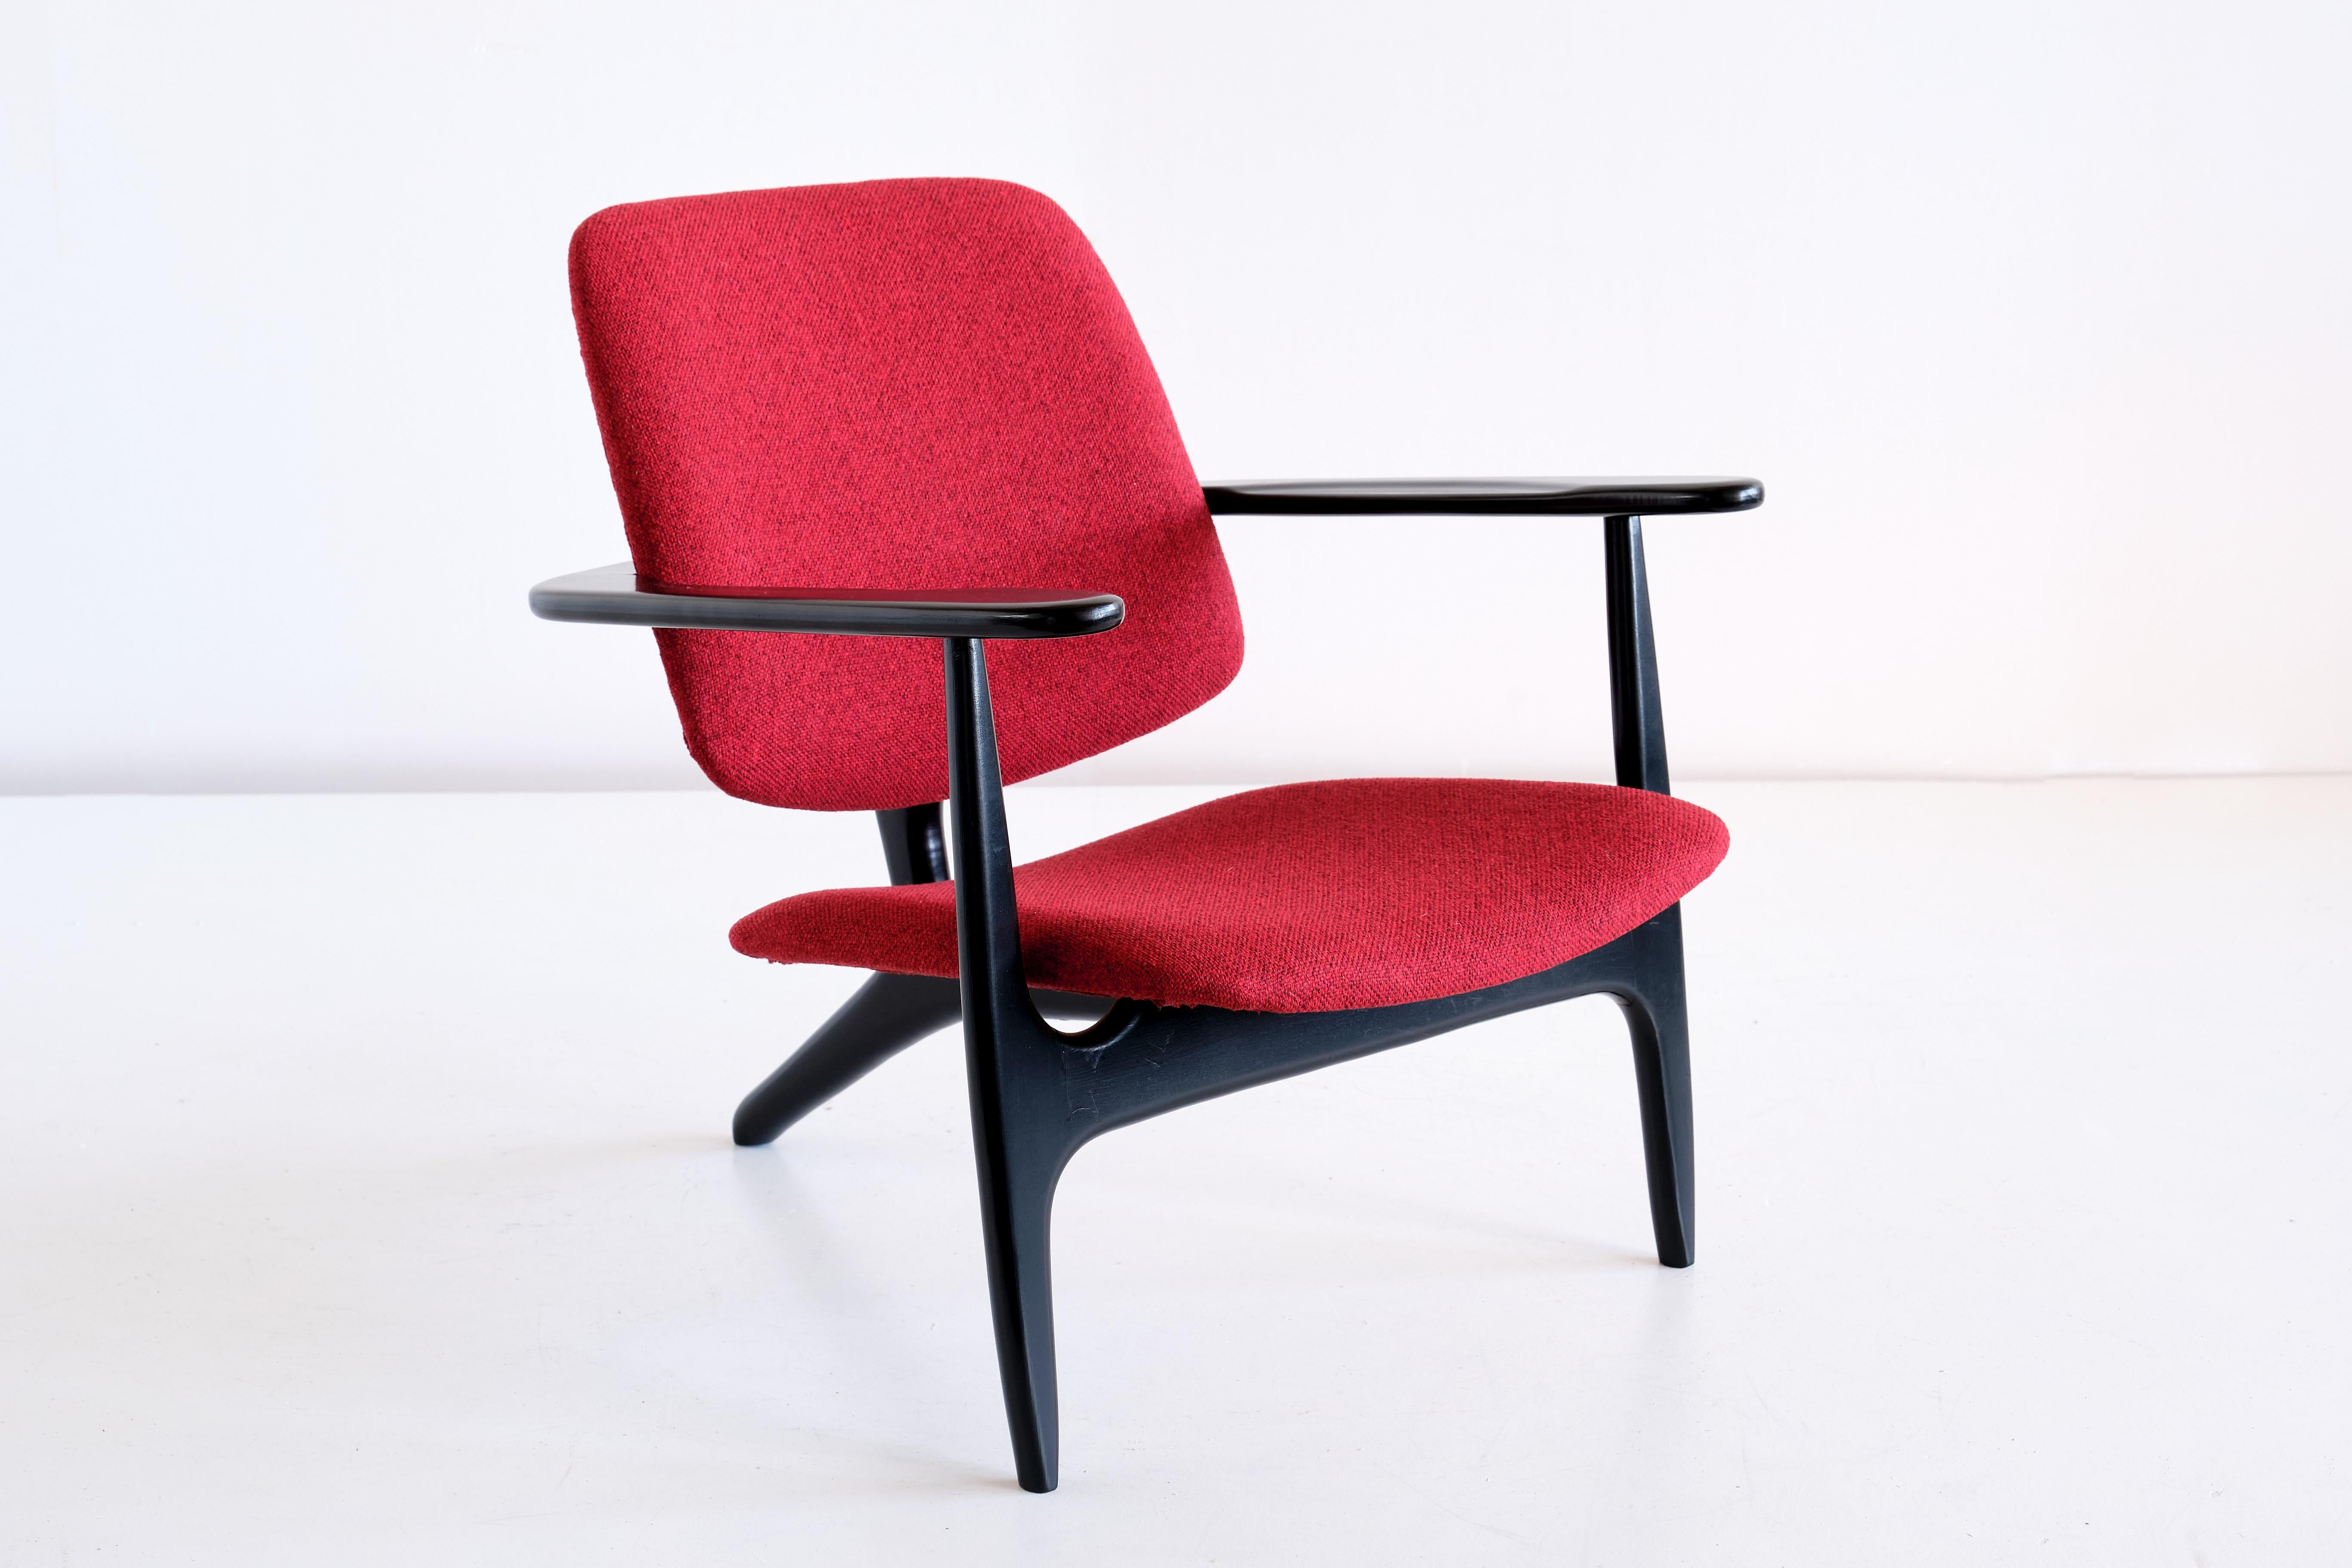 La chaise S3 a été conçue par Alfred Hendrickx et produite par Belform en Belgique en 1958. Cette chaise rare a été conçue sur mesure par Hendrickx pour le salon de première classe de Sabena Airlines à l'aéroport de Zaventem, à Bruxelles. Le cadre à